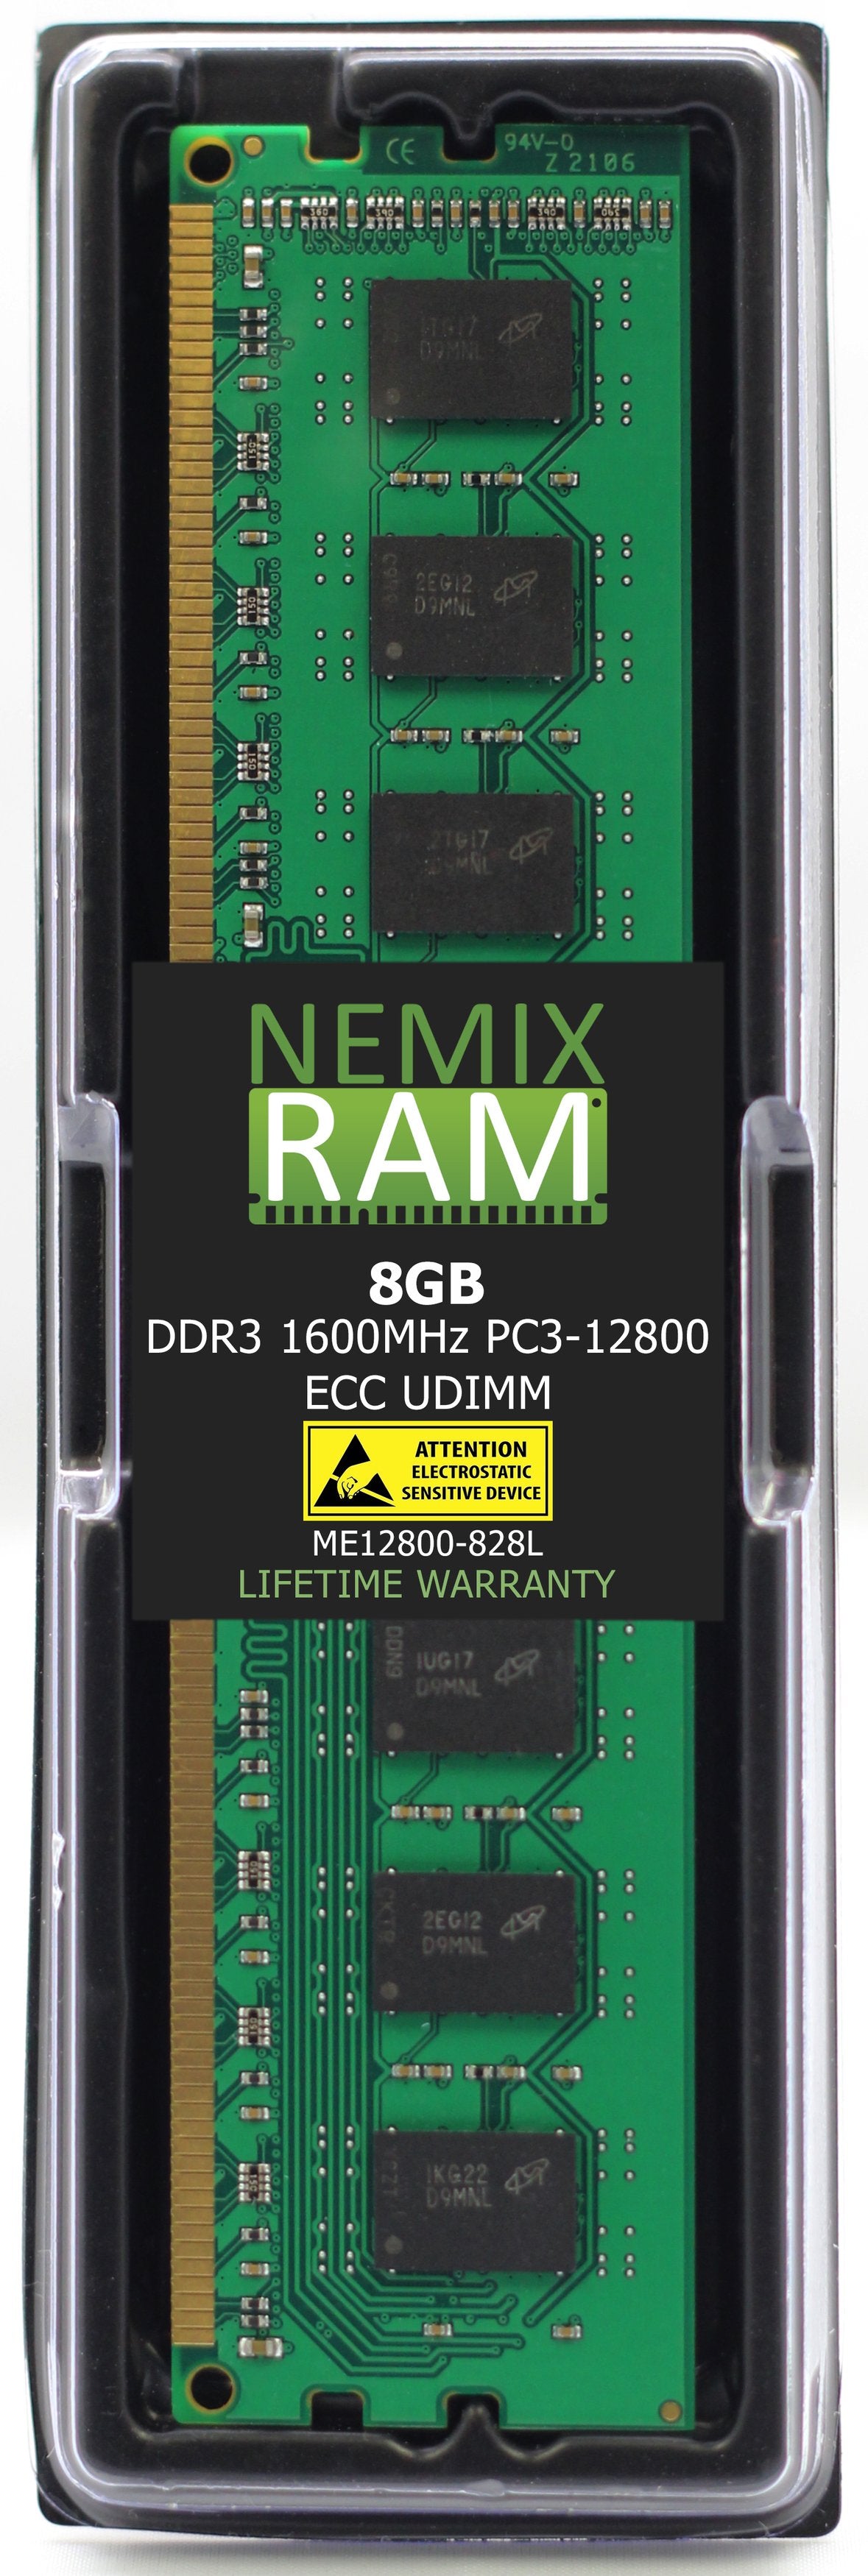 8GB DDR3 1600MHZ PC3-12800 ECC UDIMM Compatible with Supermicro MEM-DR380L-HL04-EU16